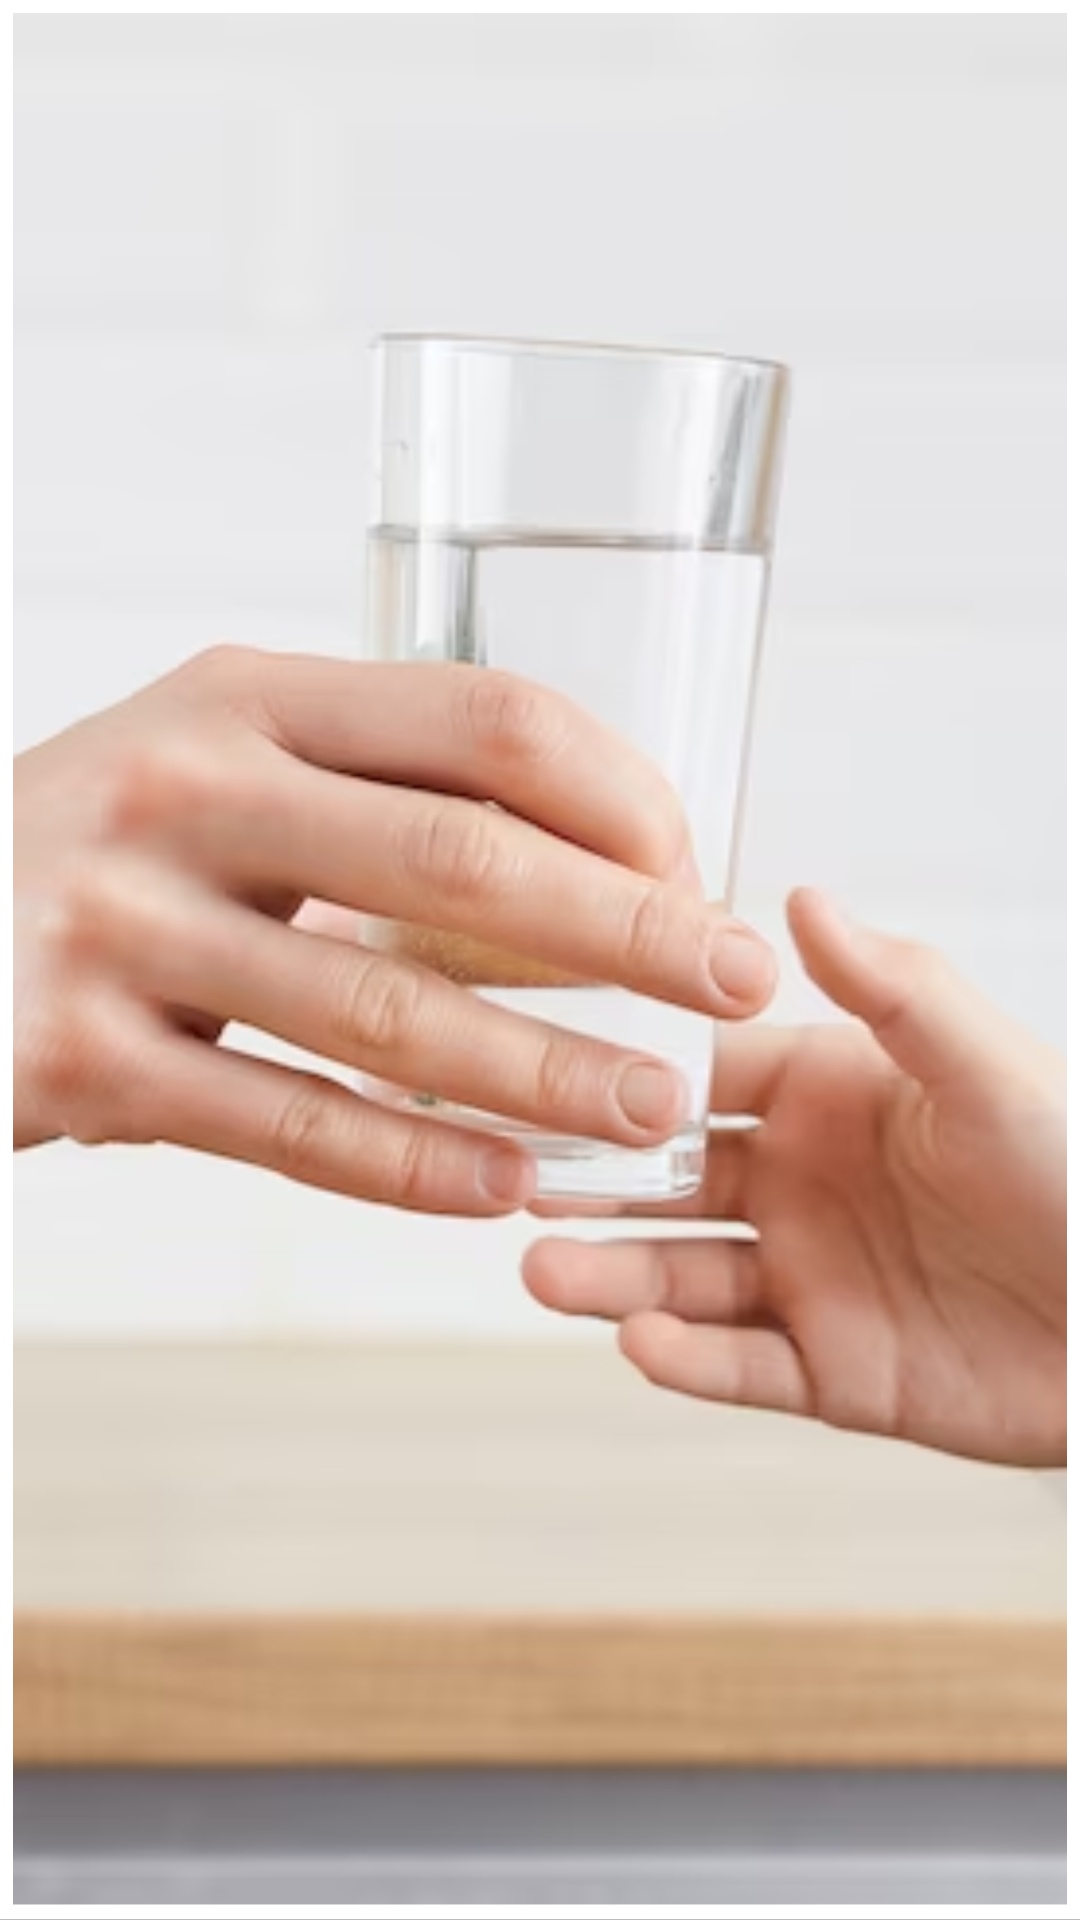 बीमारियों से बचाव के लिए जान लें पानी पीने का सही समय